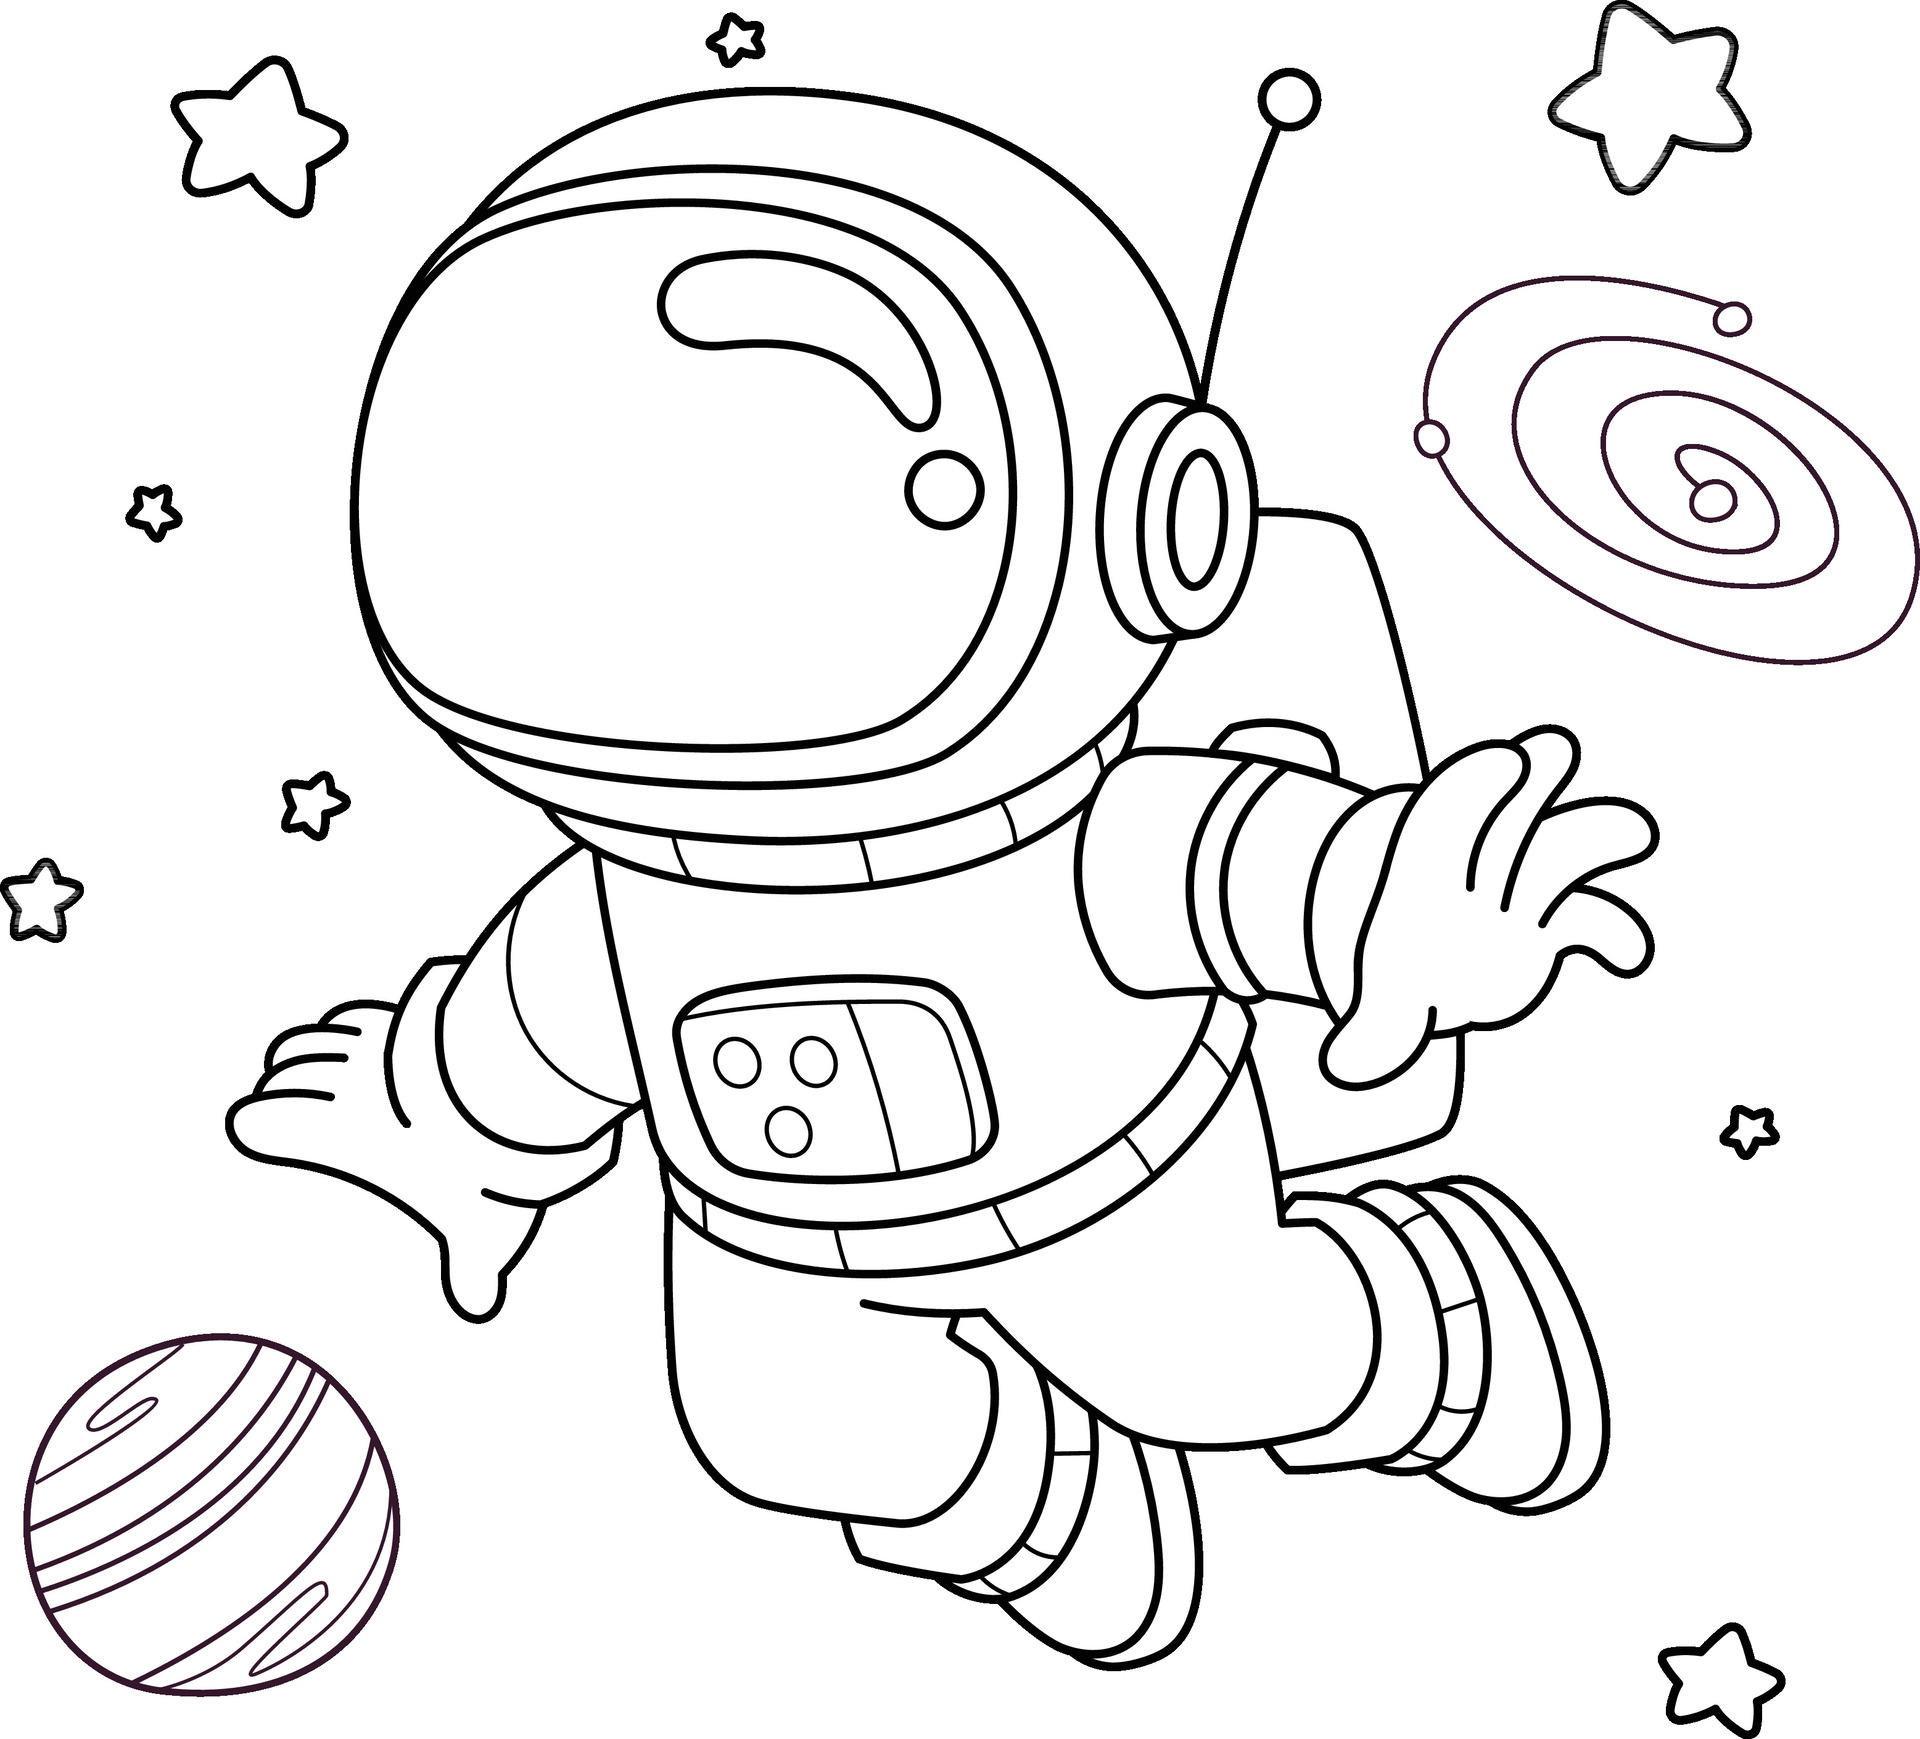 Скафандр раскраска. Космонавт раскраска для детей. Раскраска космонавт в космосе. Космонавт раскраска для малышей. Трафарет Космонавта в скафандре.